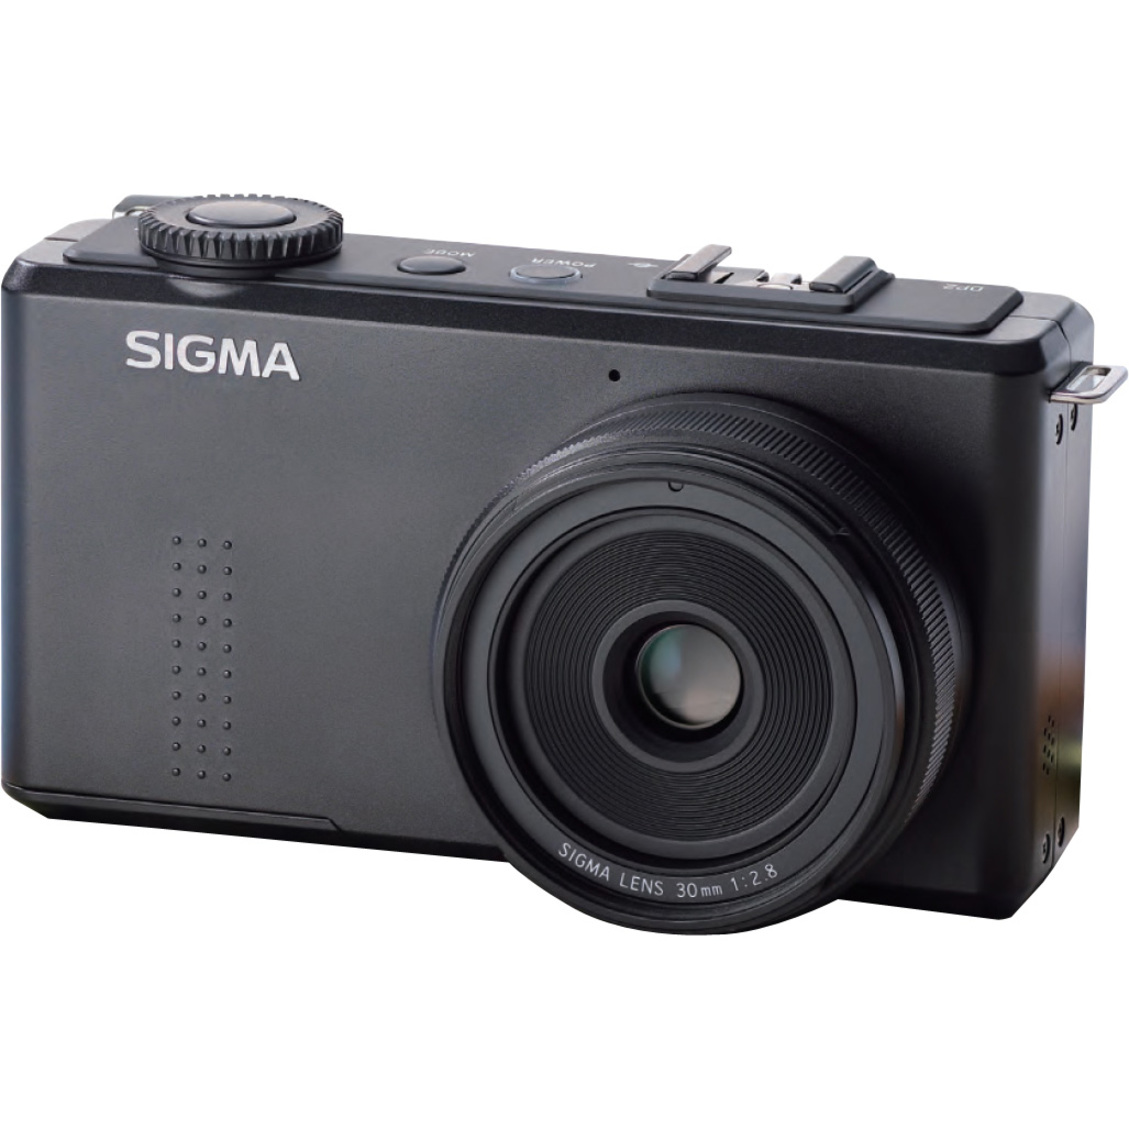 Sigma DP2 Merrill 46 Megapixel Compact Camera, Black - Walmart.com